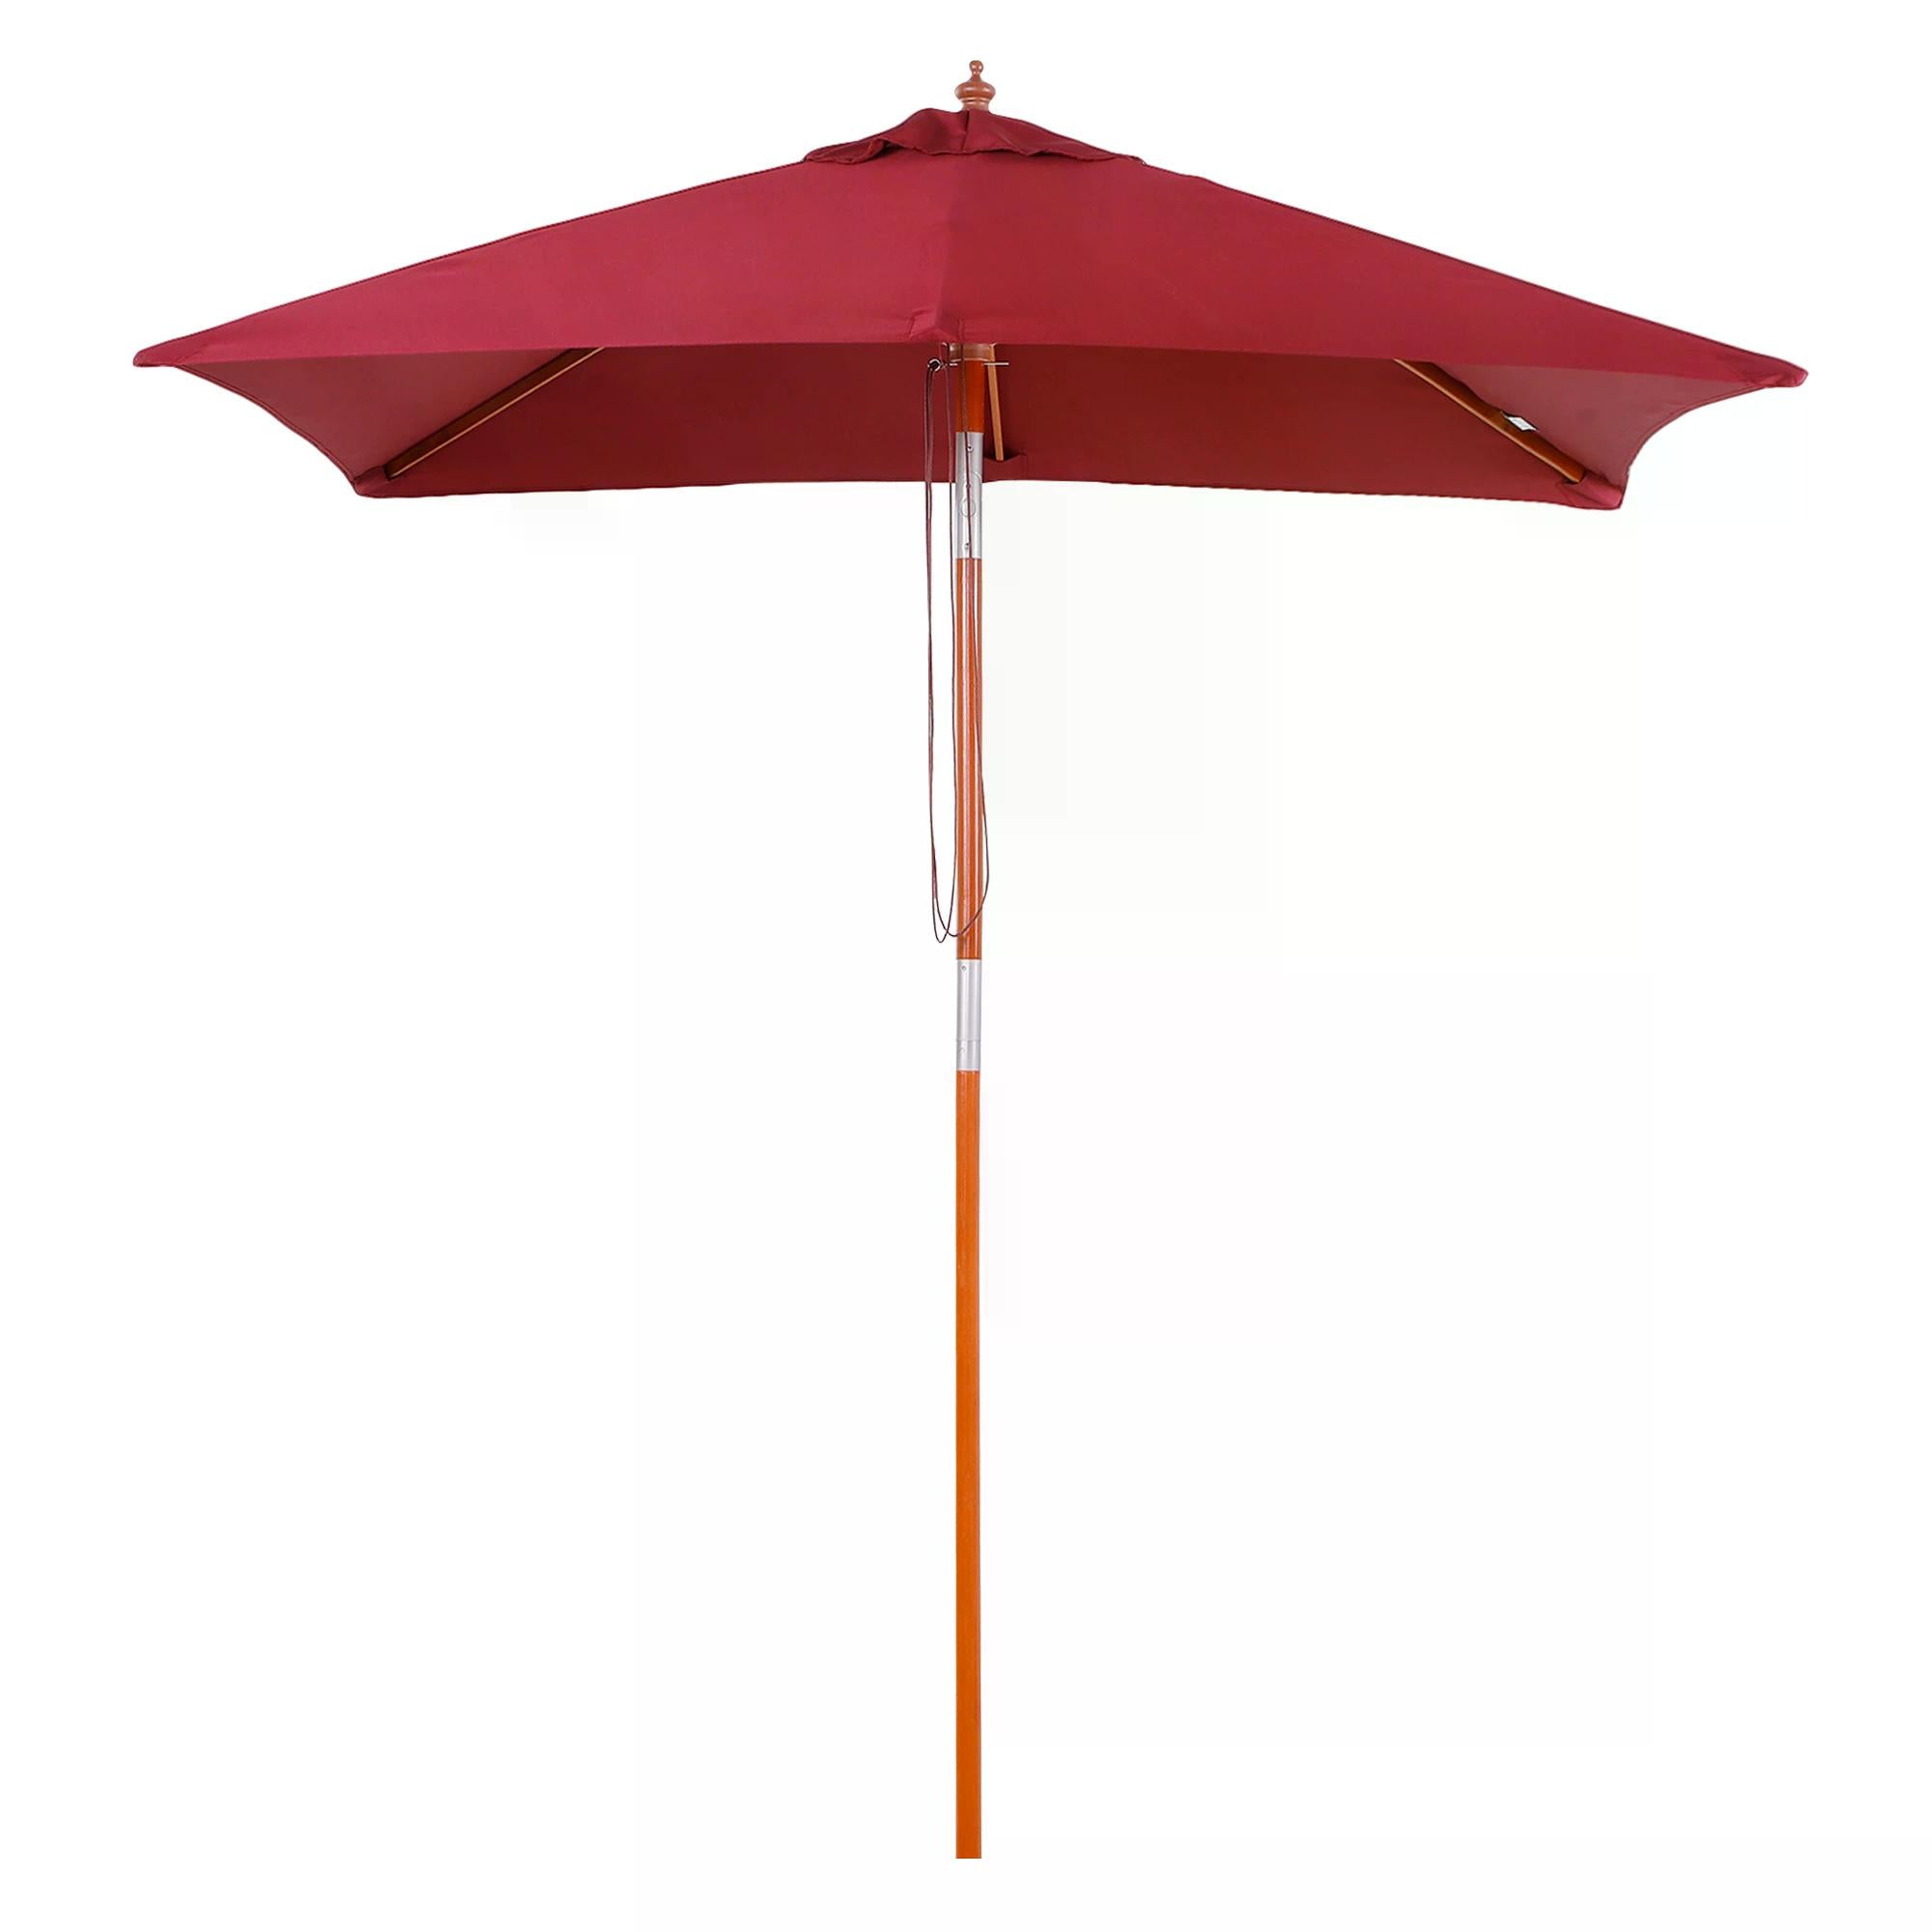 2 x 1.5m Patio Garden Parasol Sun Umbrella Sunshade Canopy Outdoor Backyard Furniture Fir Wooden Pole 6 Ribs Tilt Mechanism - Wine Red-0